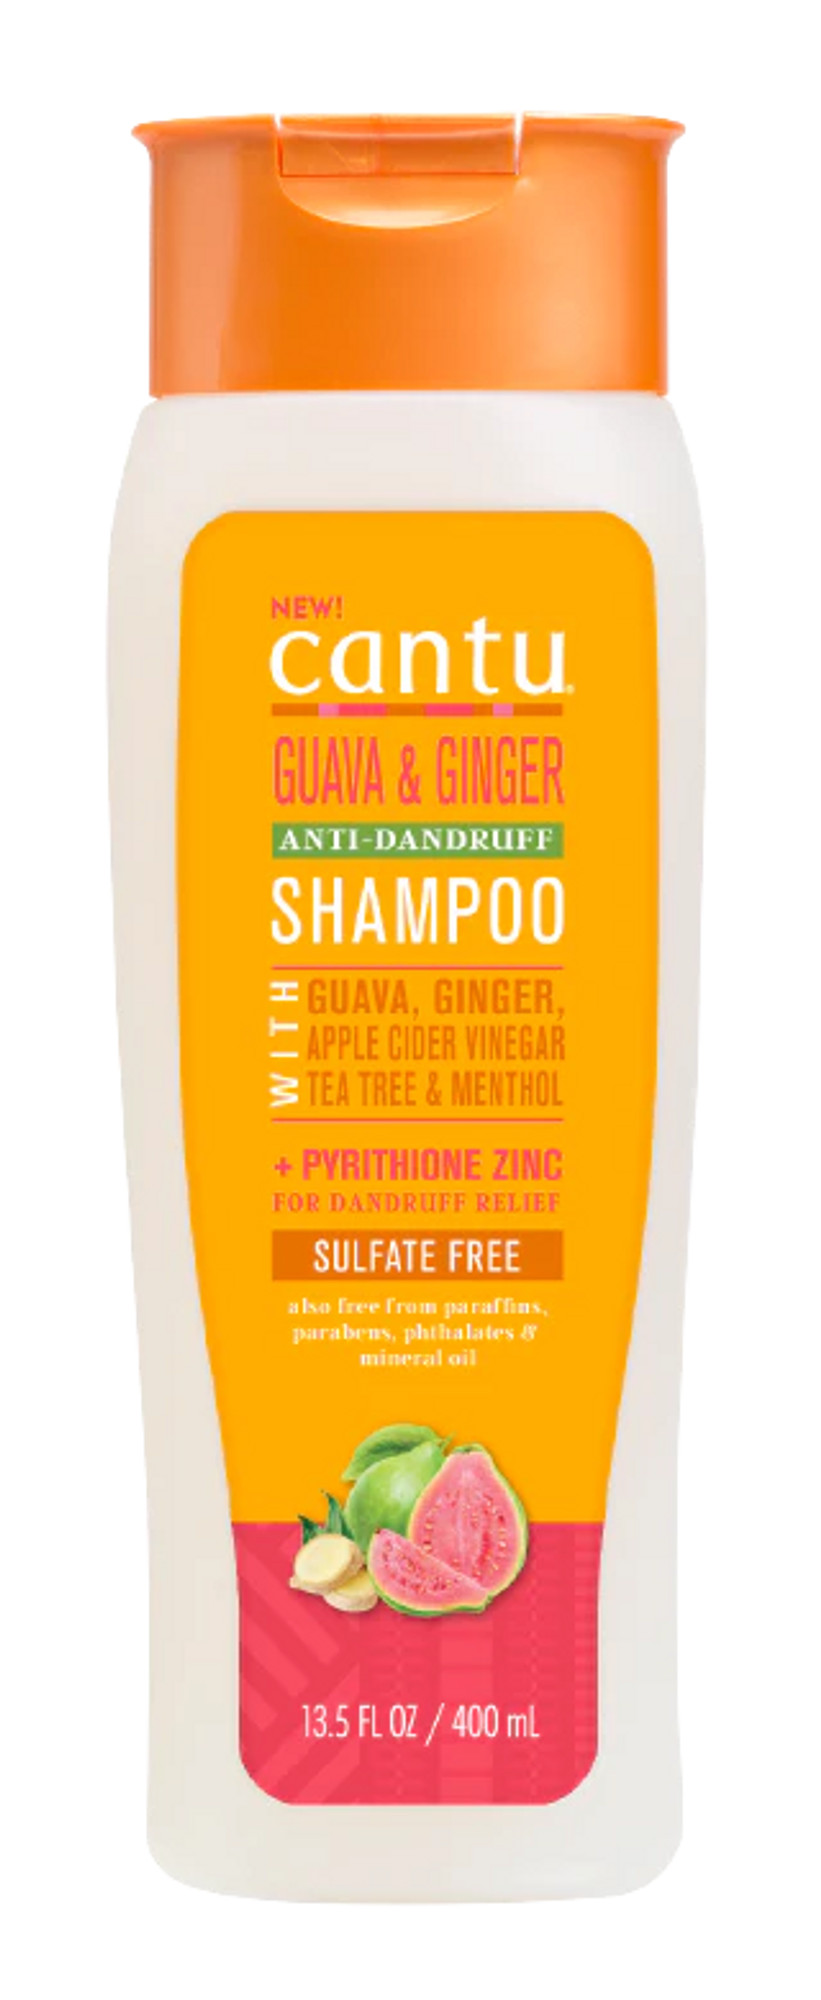 Cantu Guava & Ginger Anti-Dandruff Shampoo